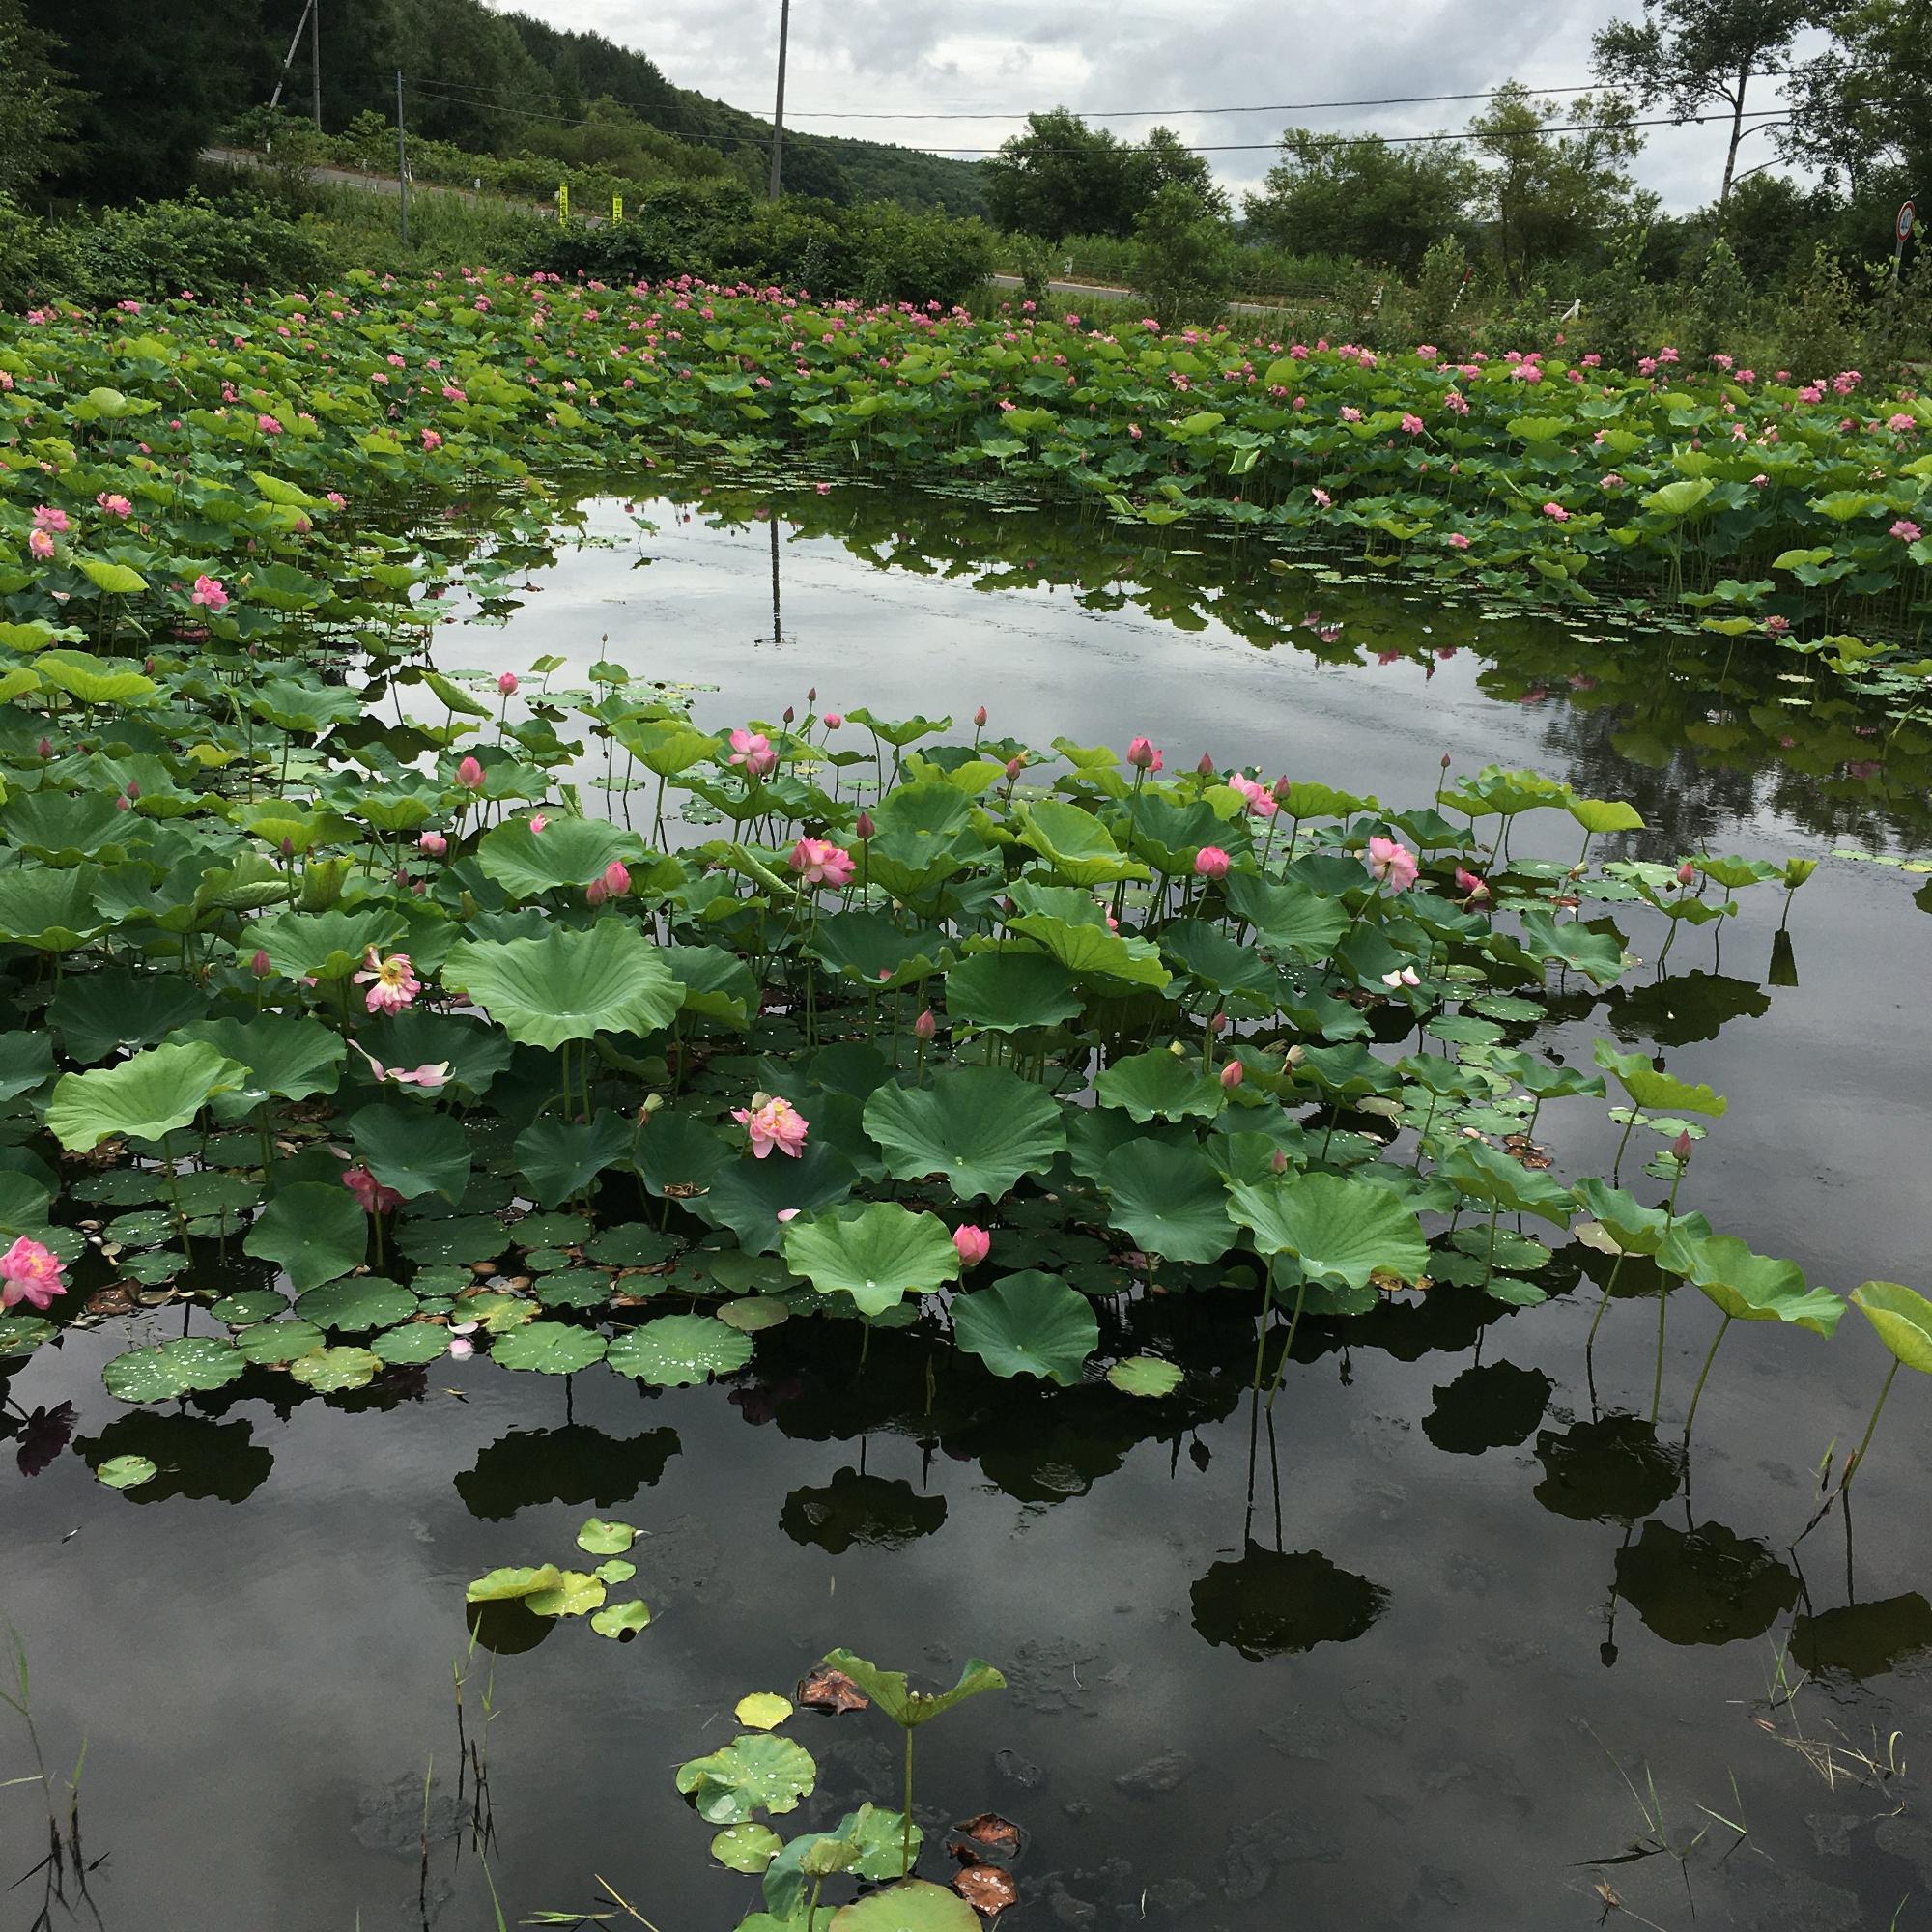 一面に蓮の葉っぱと花が。池の中には鯉やアメンボ、小さな川エビもいるそうです